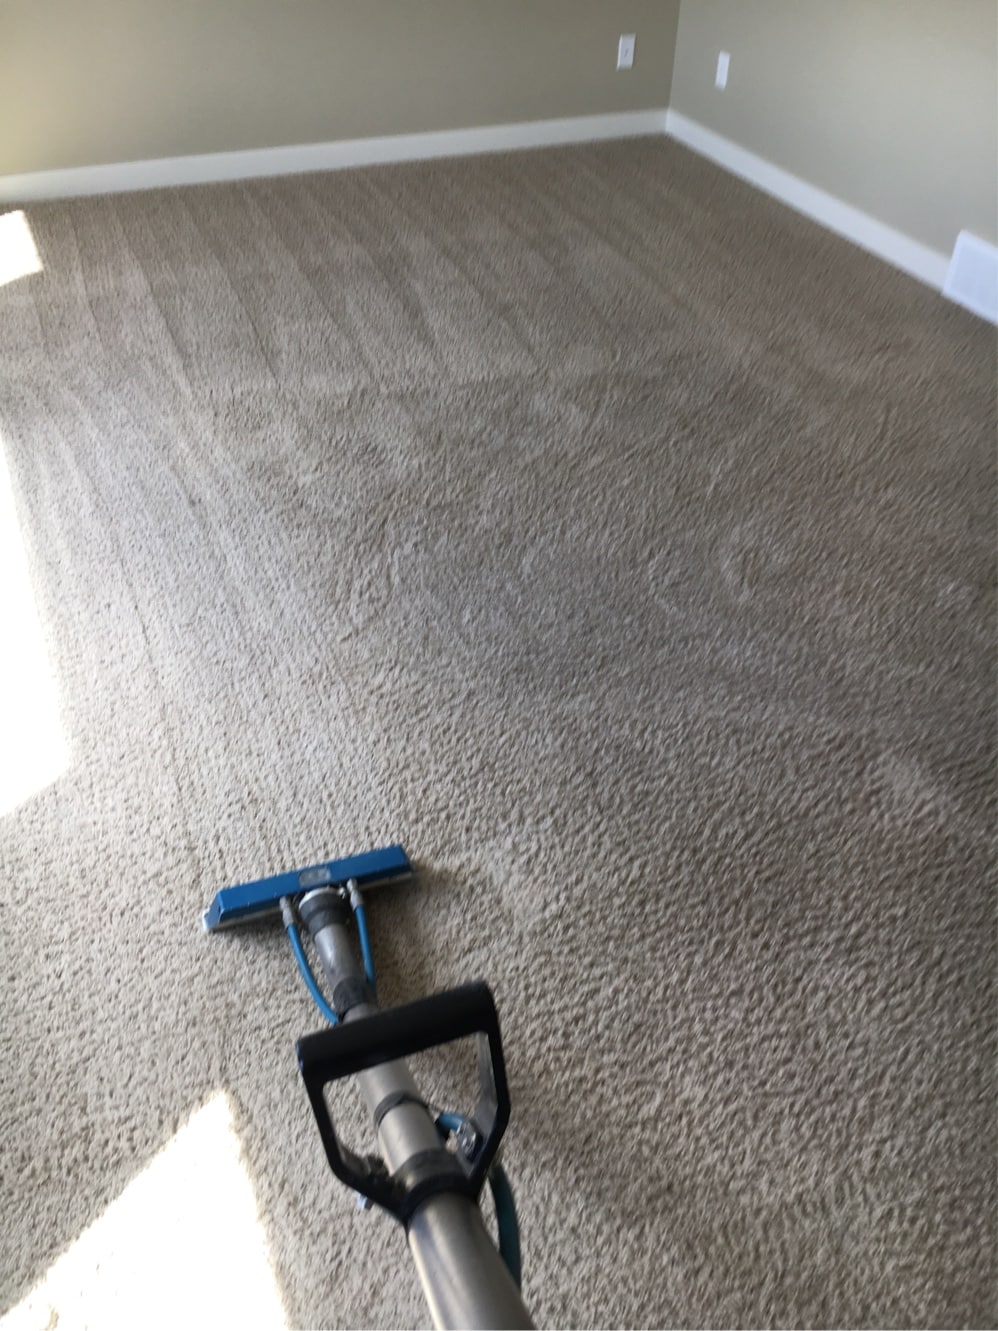 freshly cleaned carpet